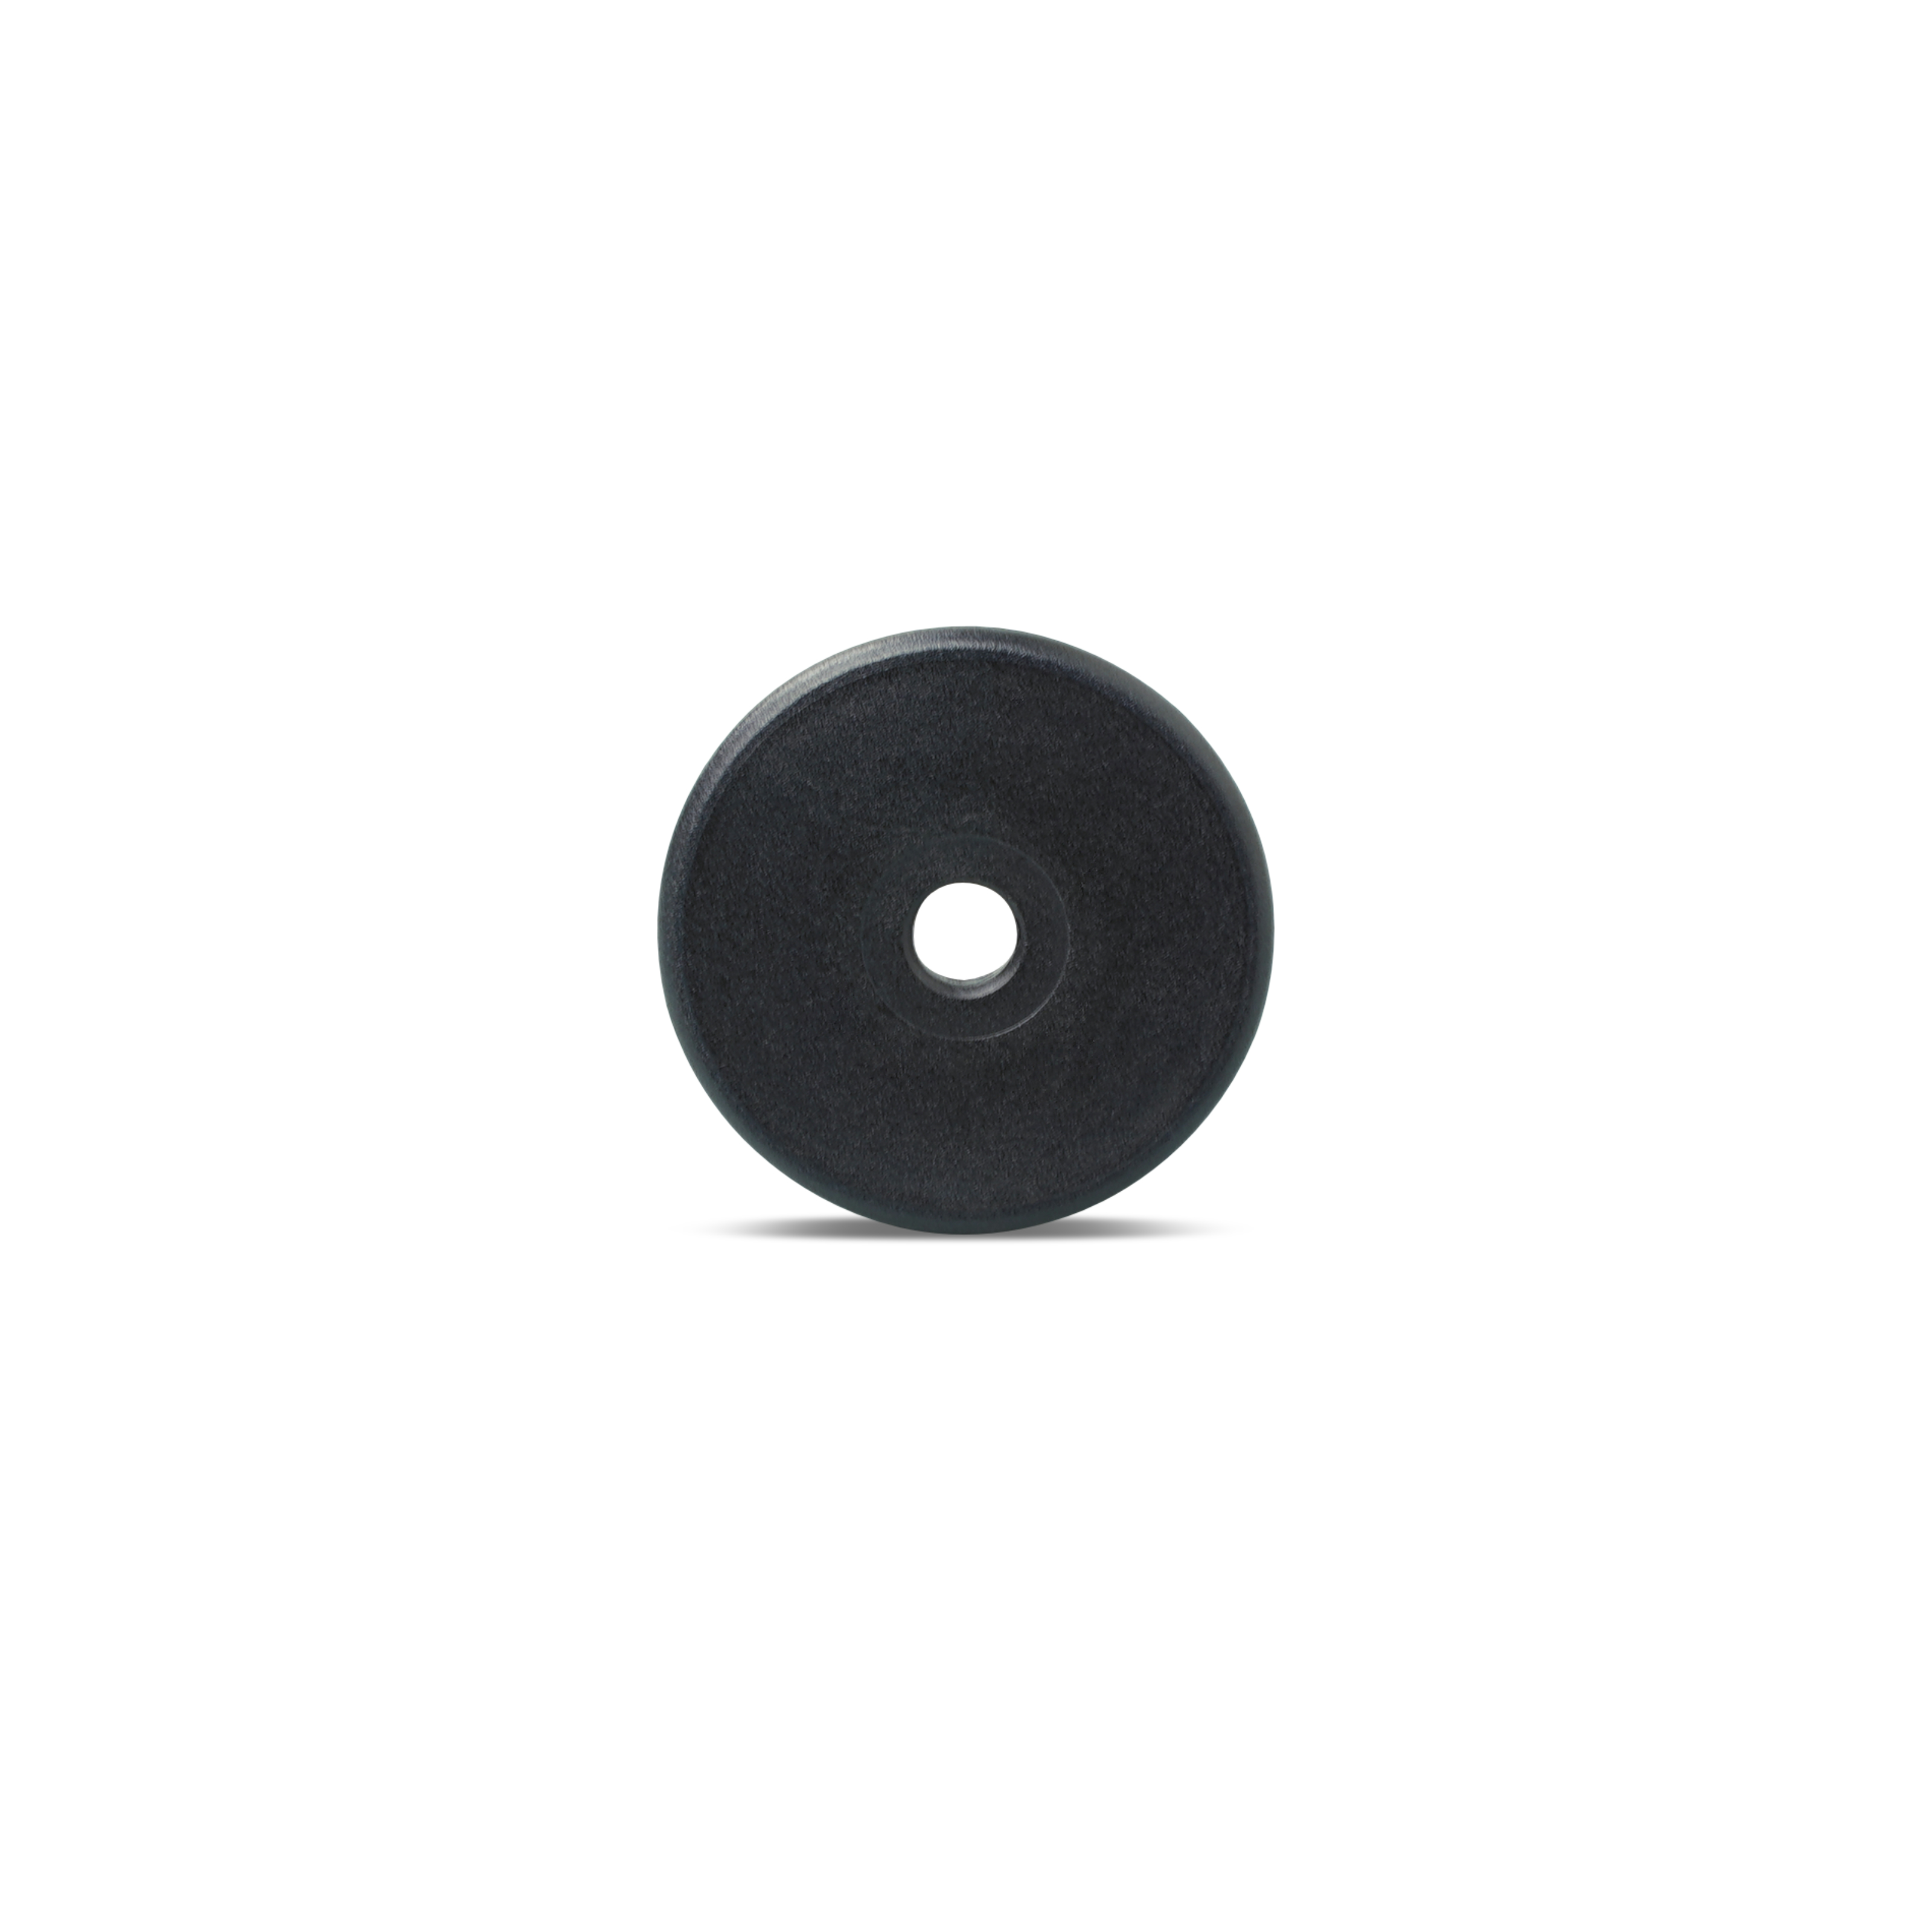 Vorderseite NFC Münze aus PPS in schwarz mit Lochung in der Mitte